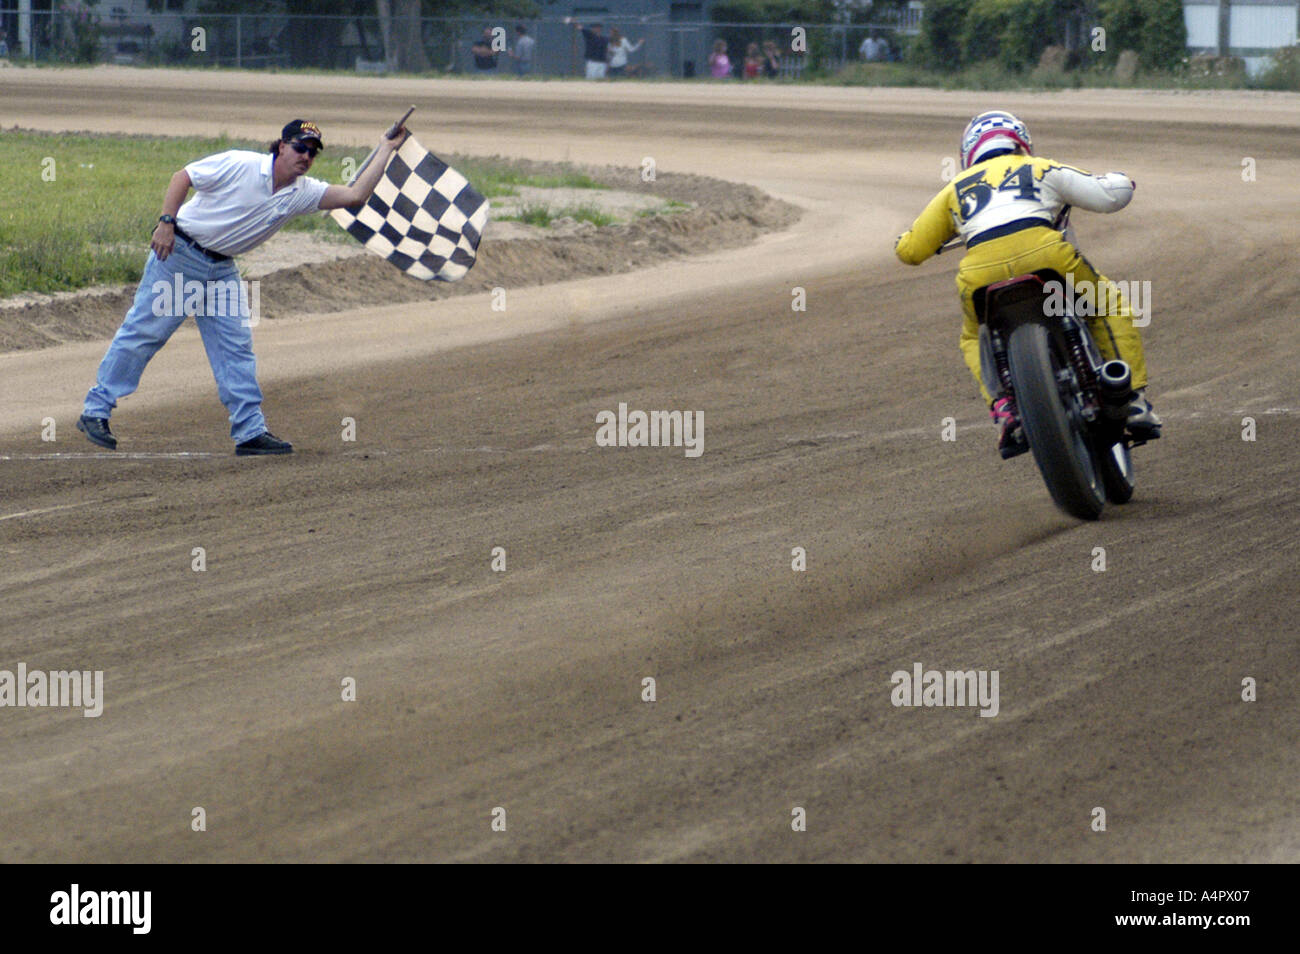 RF 54 racer habillé en jaune prend le drapeau à damier lors de dirt track course moto Croswell Michigan USA Banque D'Images